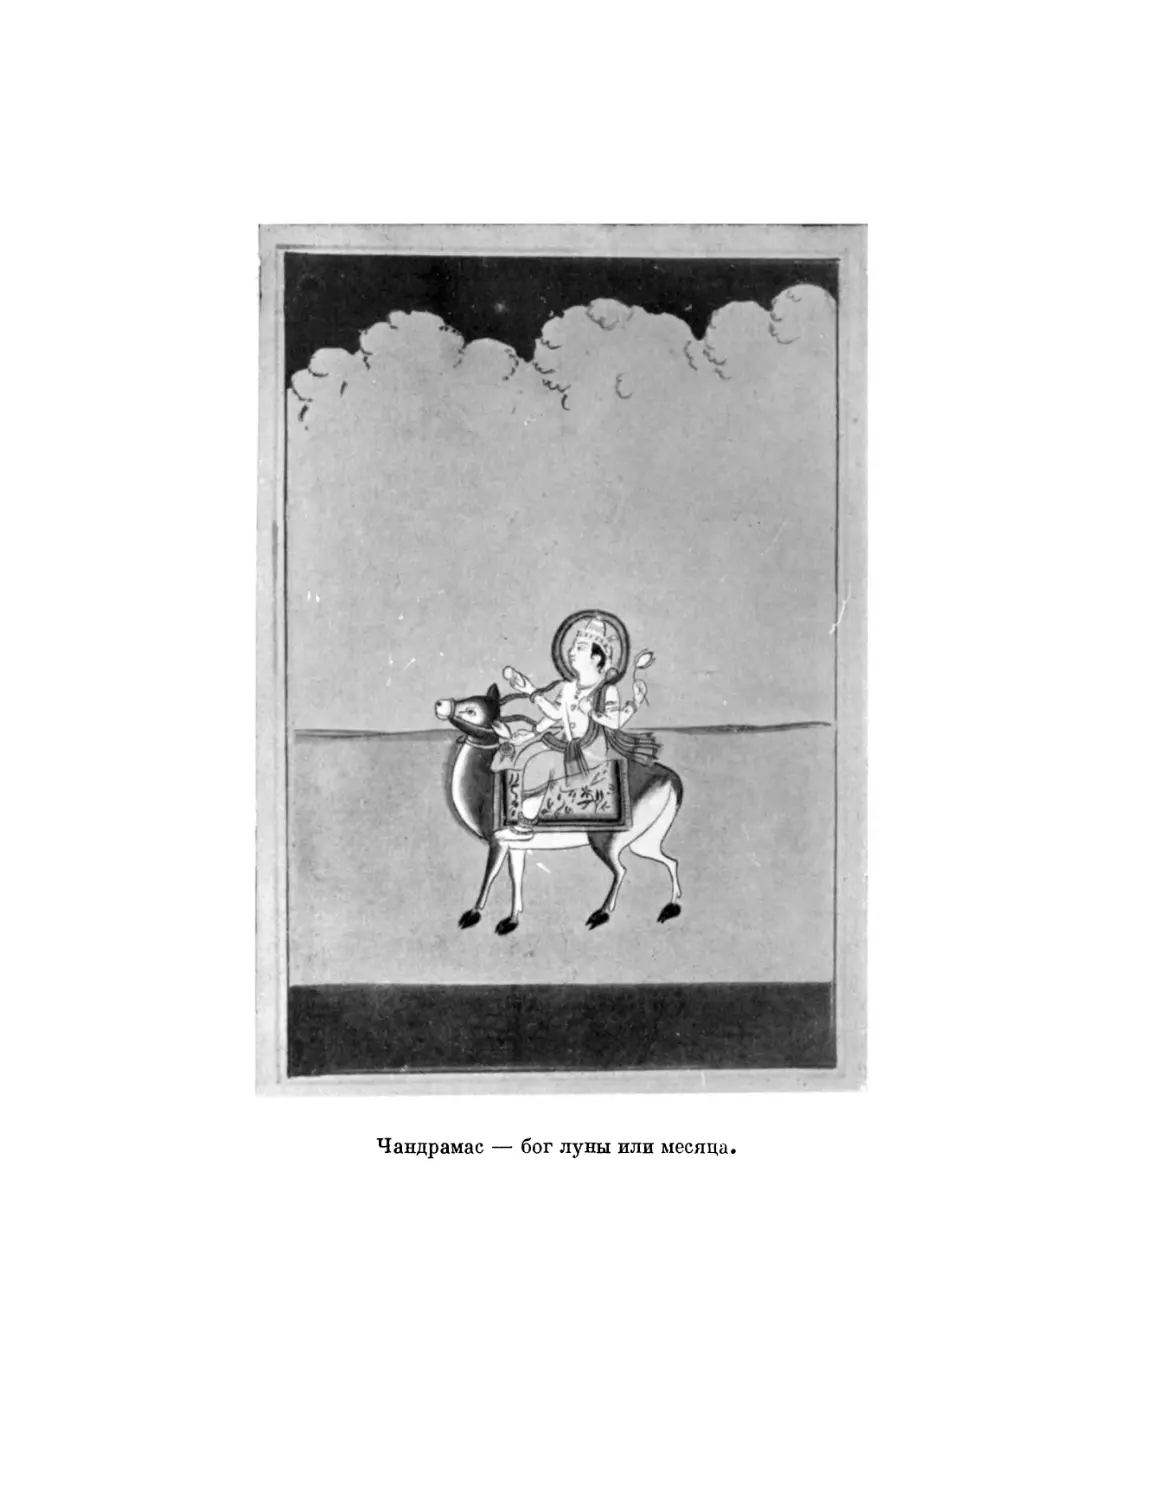 Вклейка. Чандрамас — бог луны или месяца